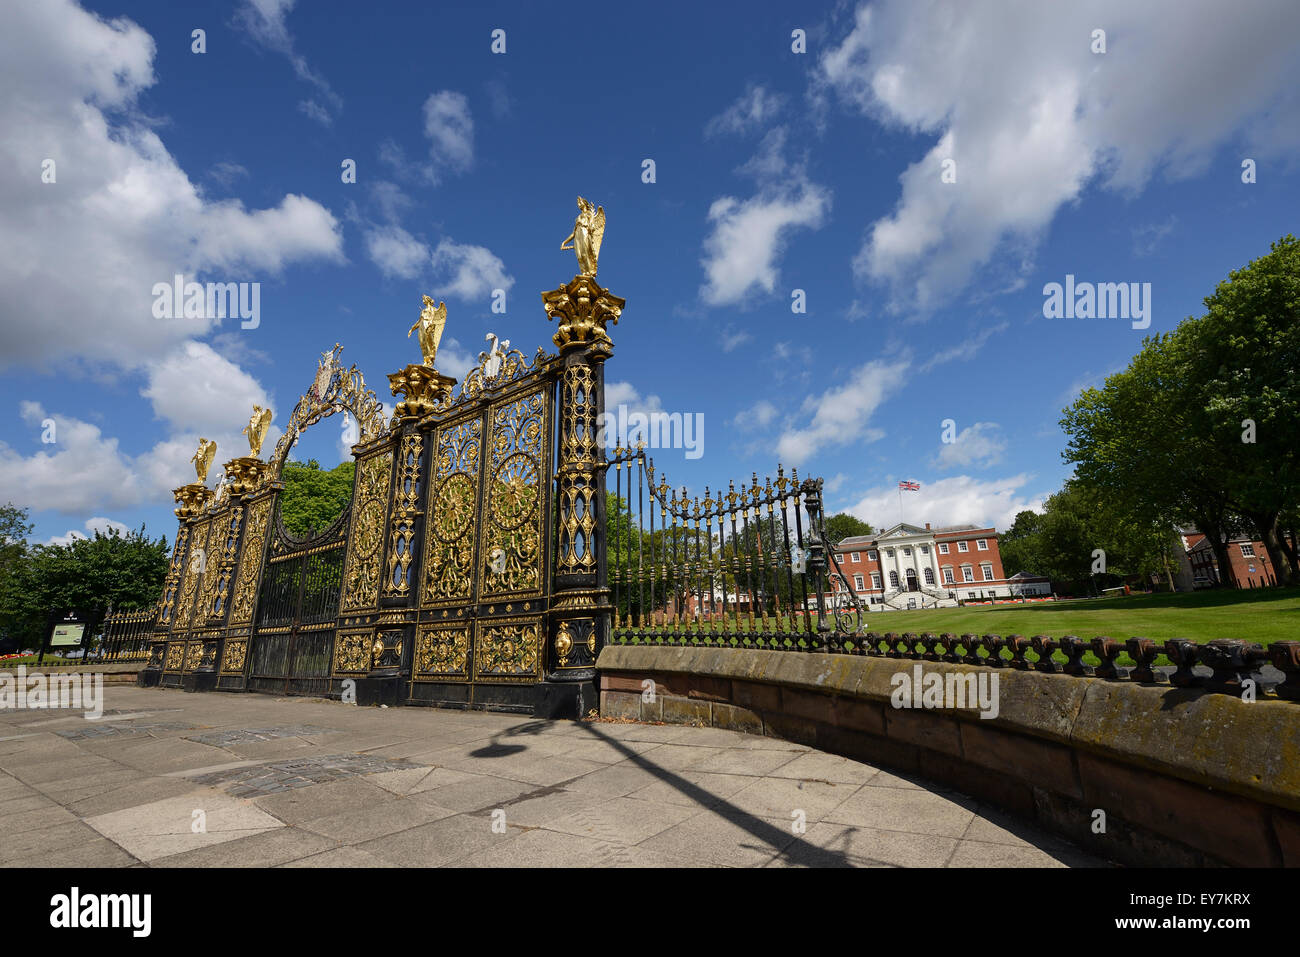 El Golden Gates fuera del Ayuntamiento Warrington Cheshire UK Foto de stock